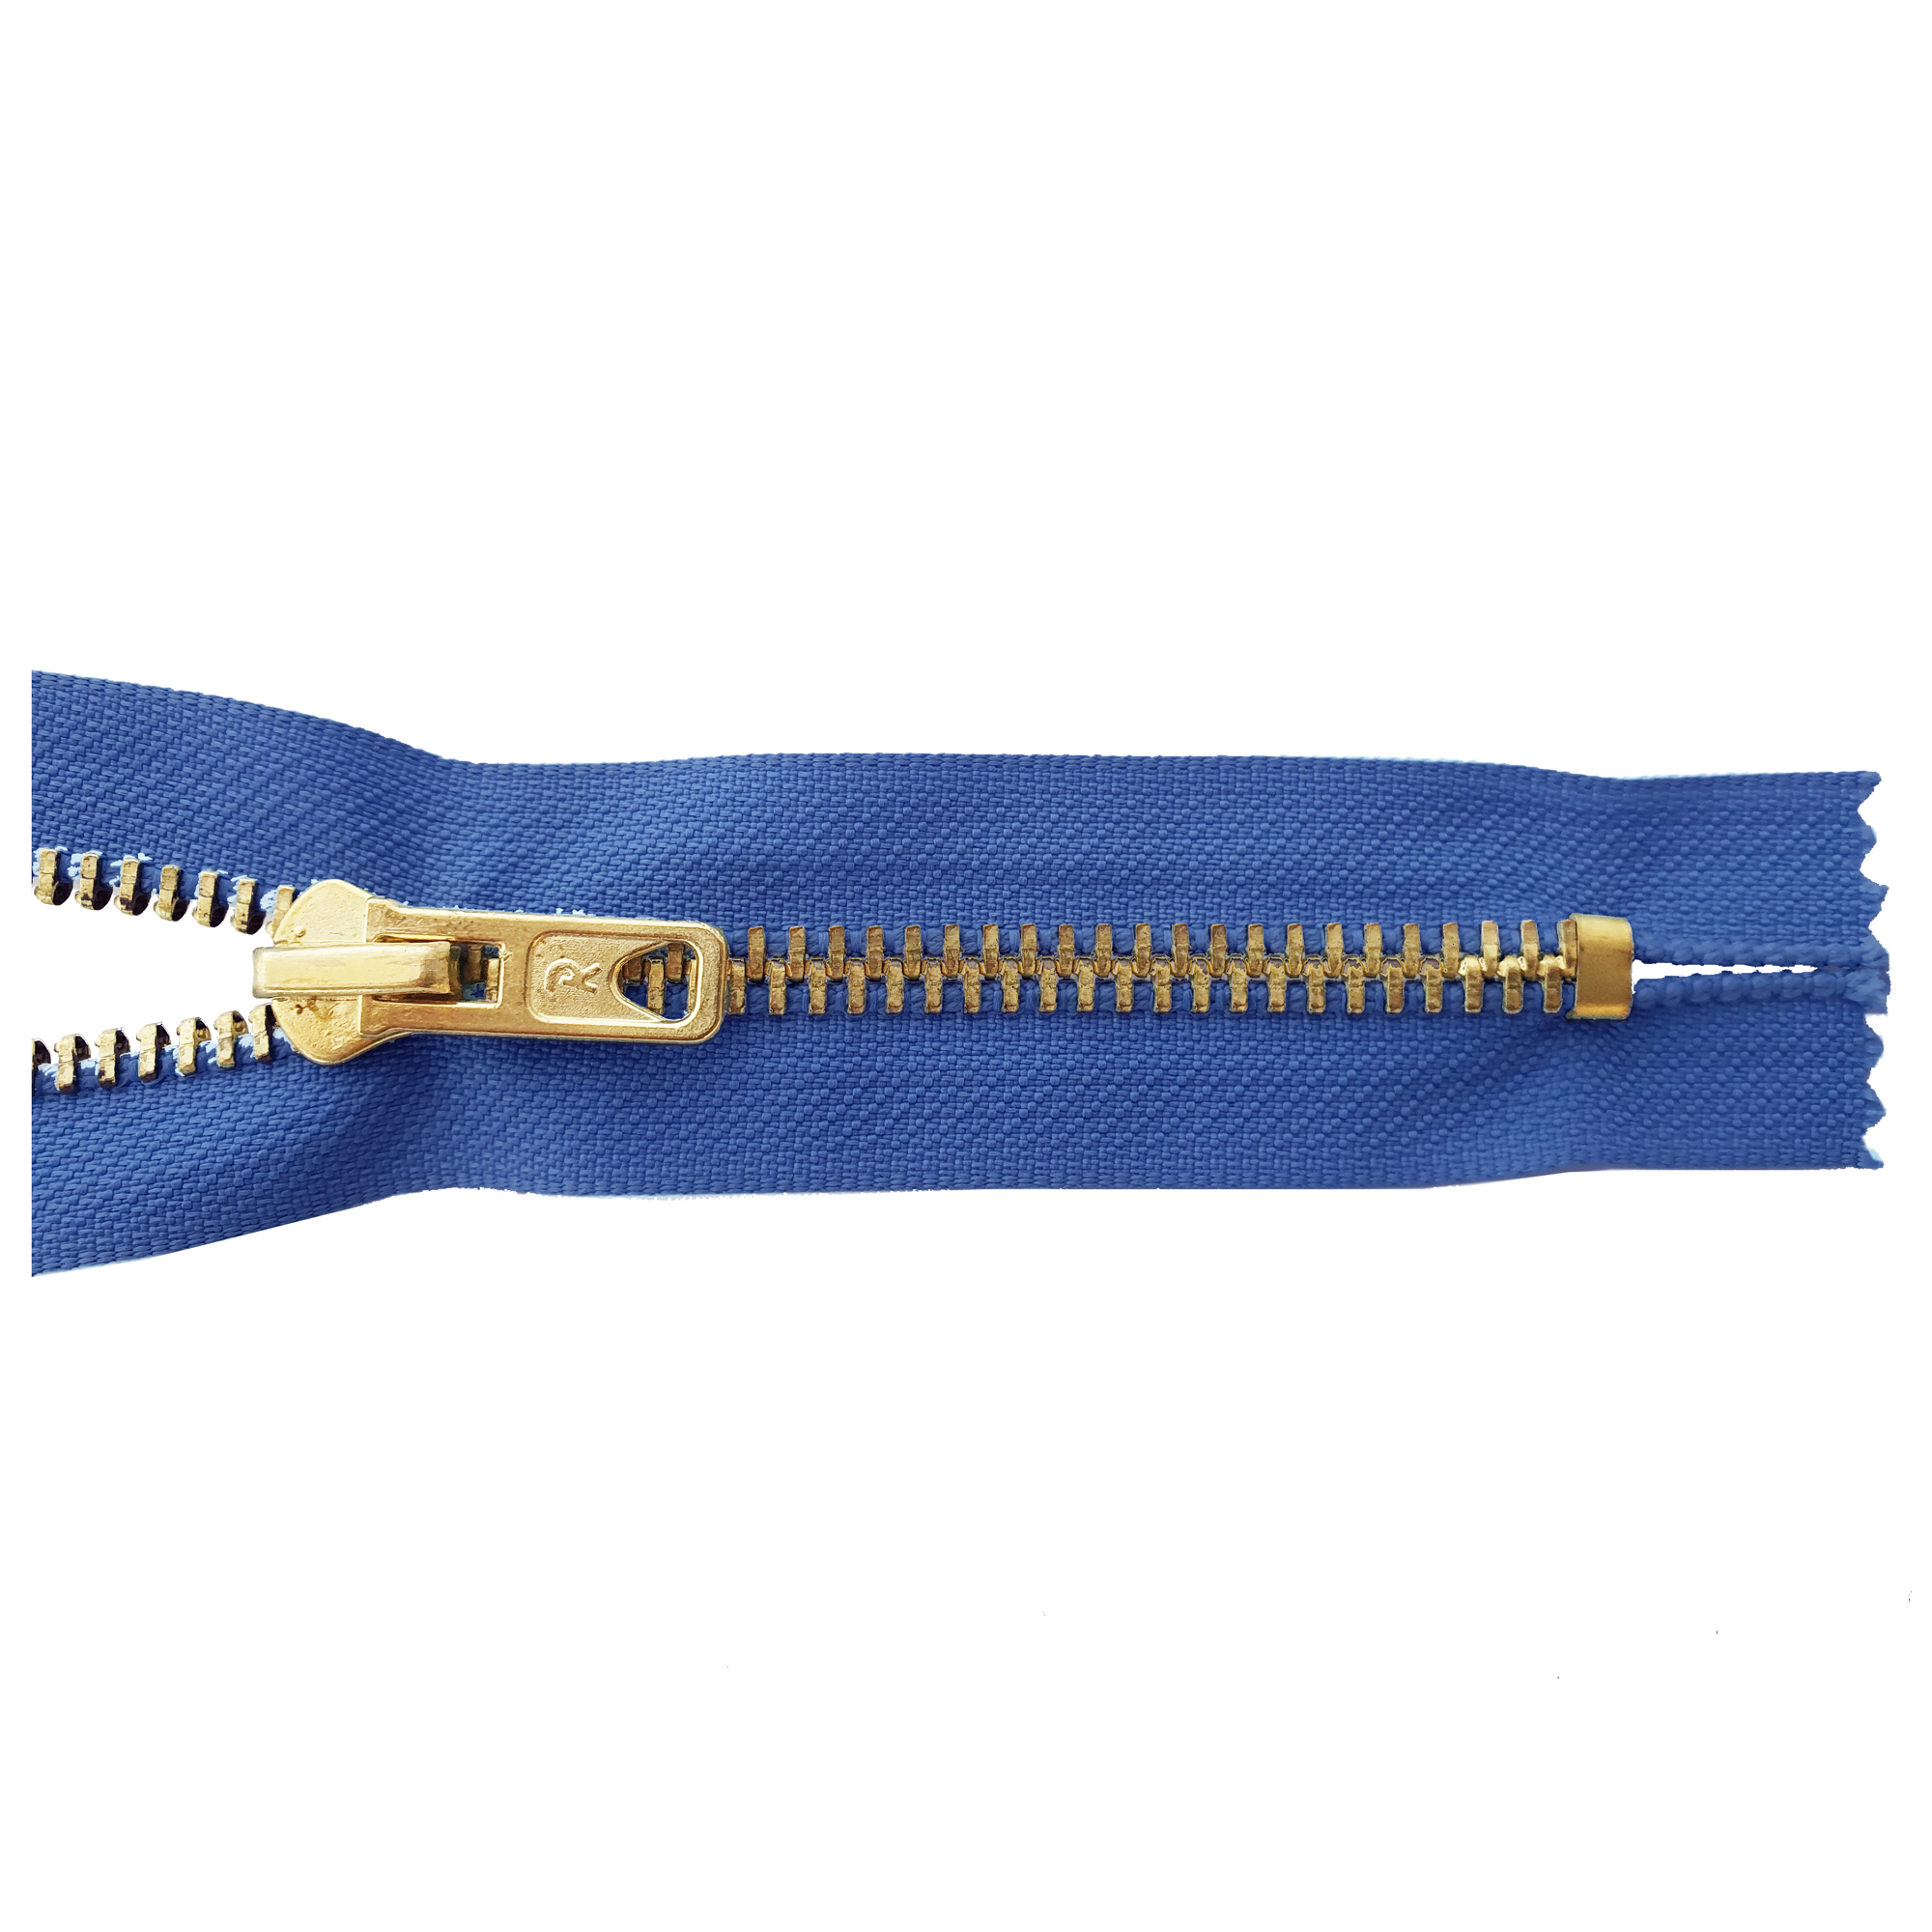 Reißverschluss 18cm, nicht teilbar, Metall goldf. breit, preussischblau, hochwertiger Marken-Reißverschluss von Rubi/Barcelona